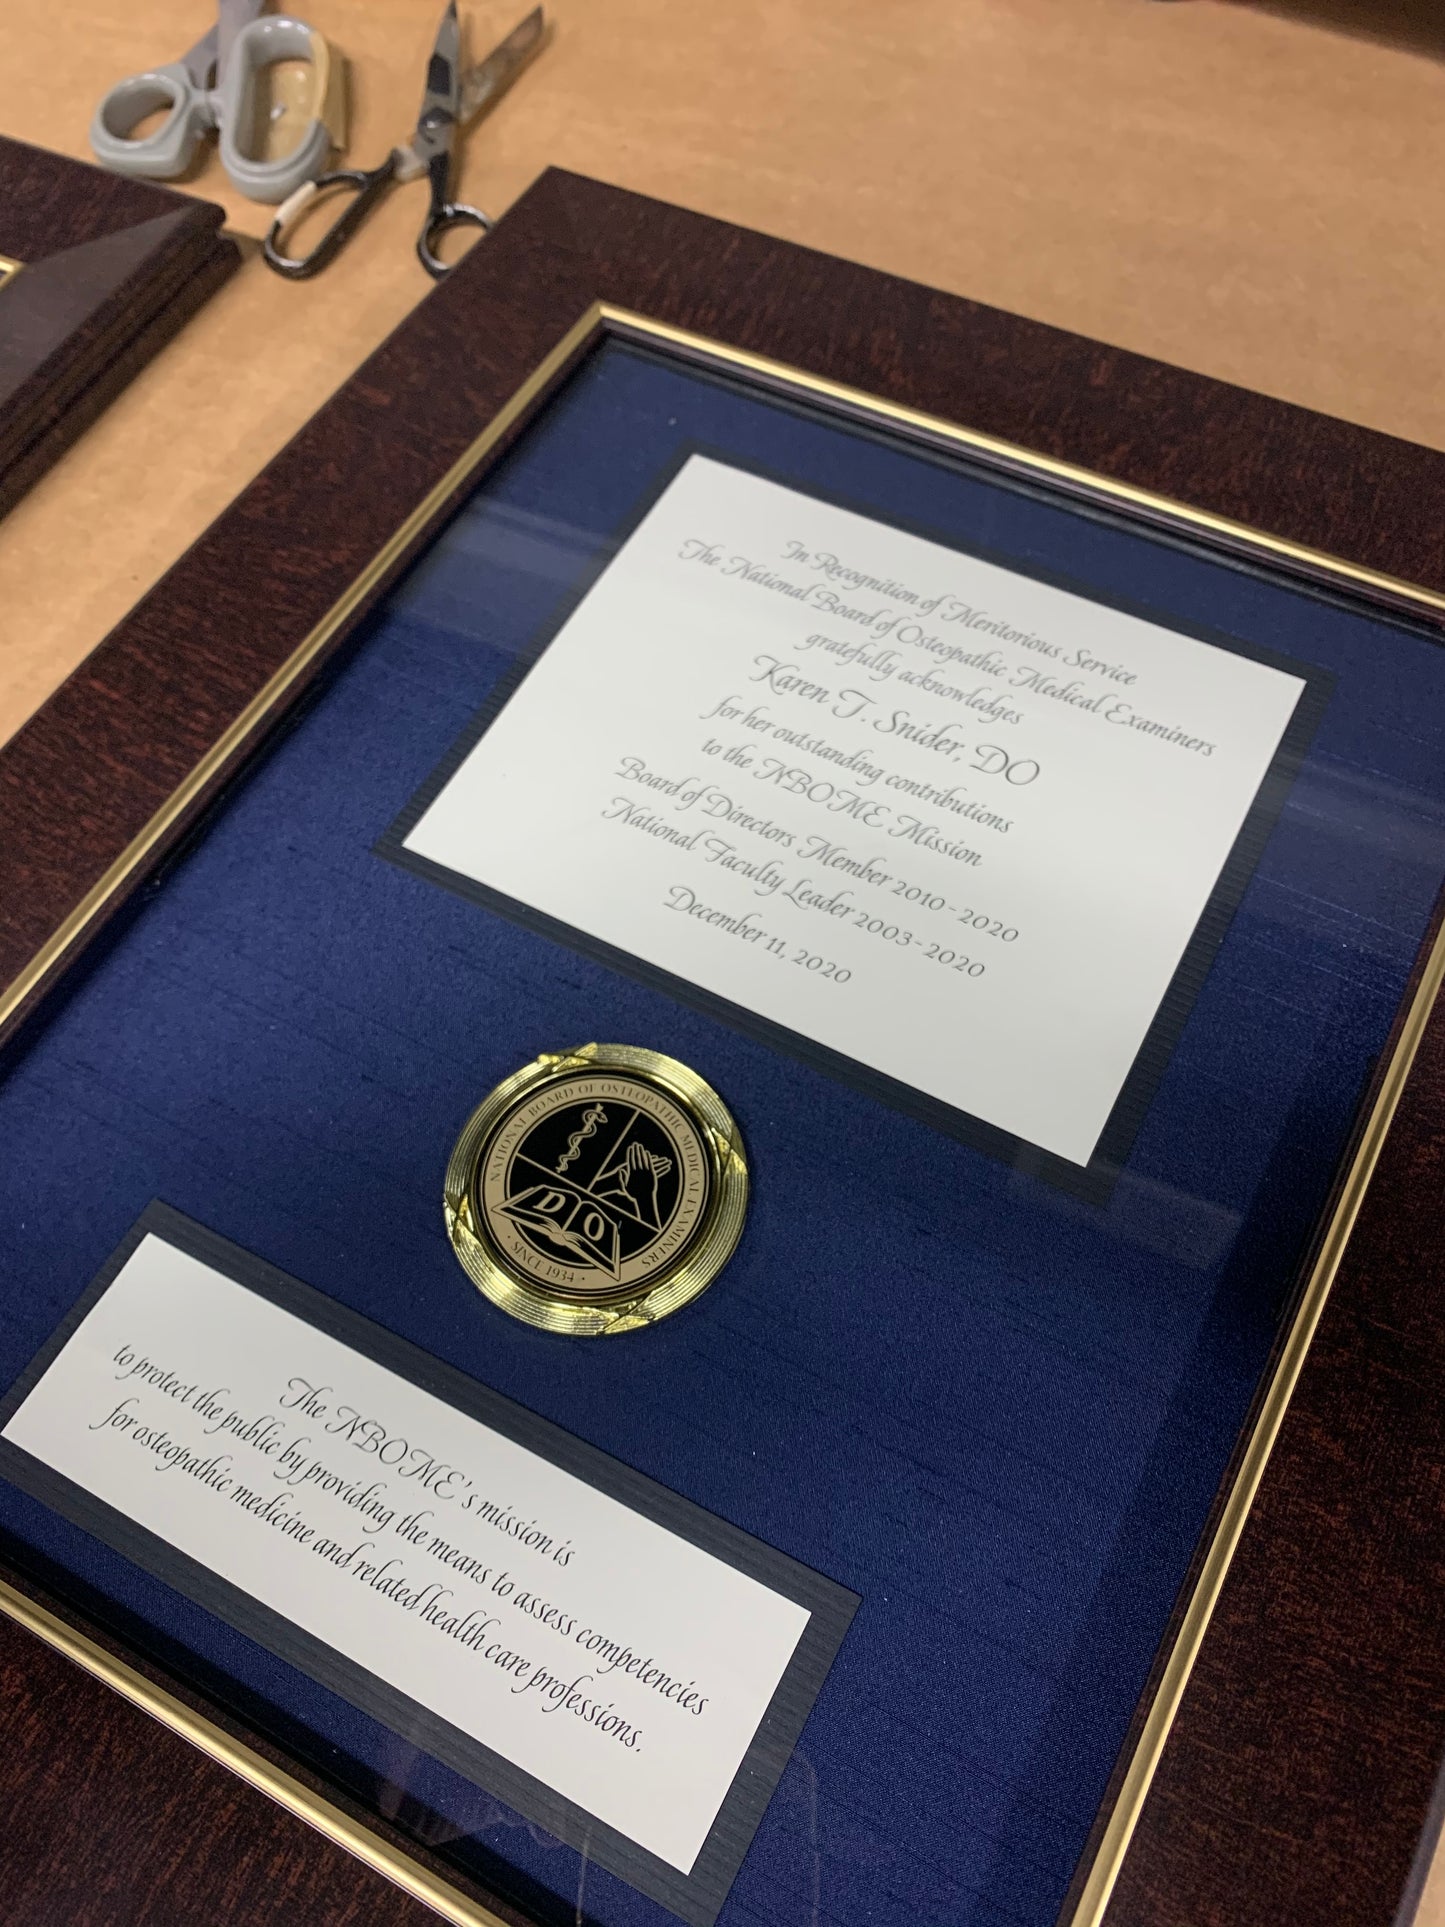 Bespoke Awards for NBOME | Awards in Gold, Wood, Black Frame | Superior Quality Bespoke Award | Custom Framed Award | Certificate | Studio Burke DC